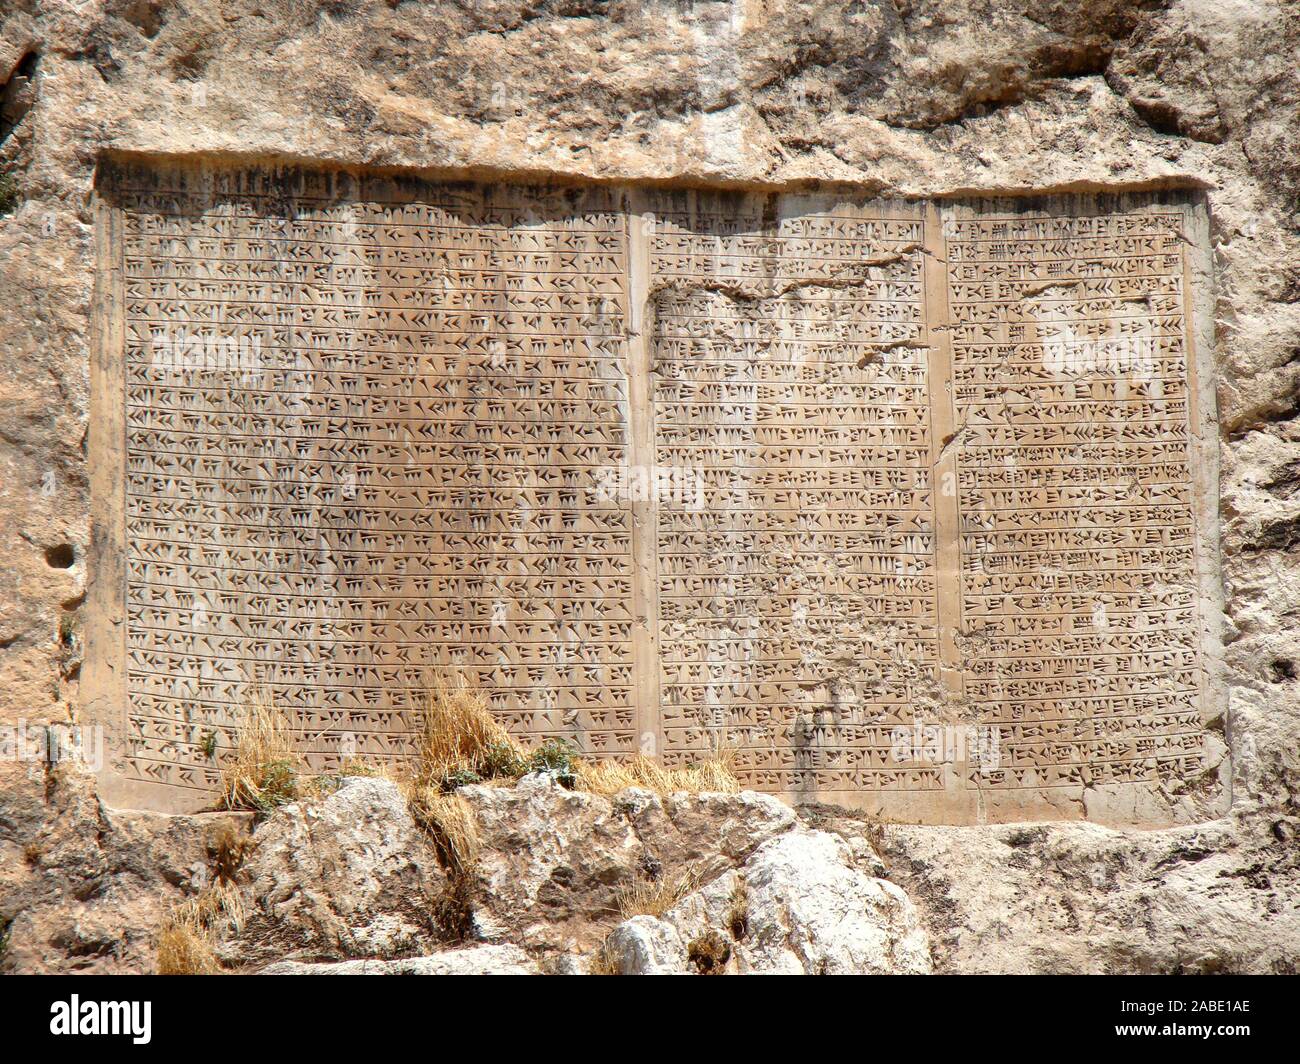 6502. Il re Assuero iscrizione cuneiforme lodando il re in persiano antico e lingue Elamite. L'iscrizione è di parecchi metri di altezza dating c. 5th. C. BC. Situato vicino a Van in Turchia. Foto Stock